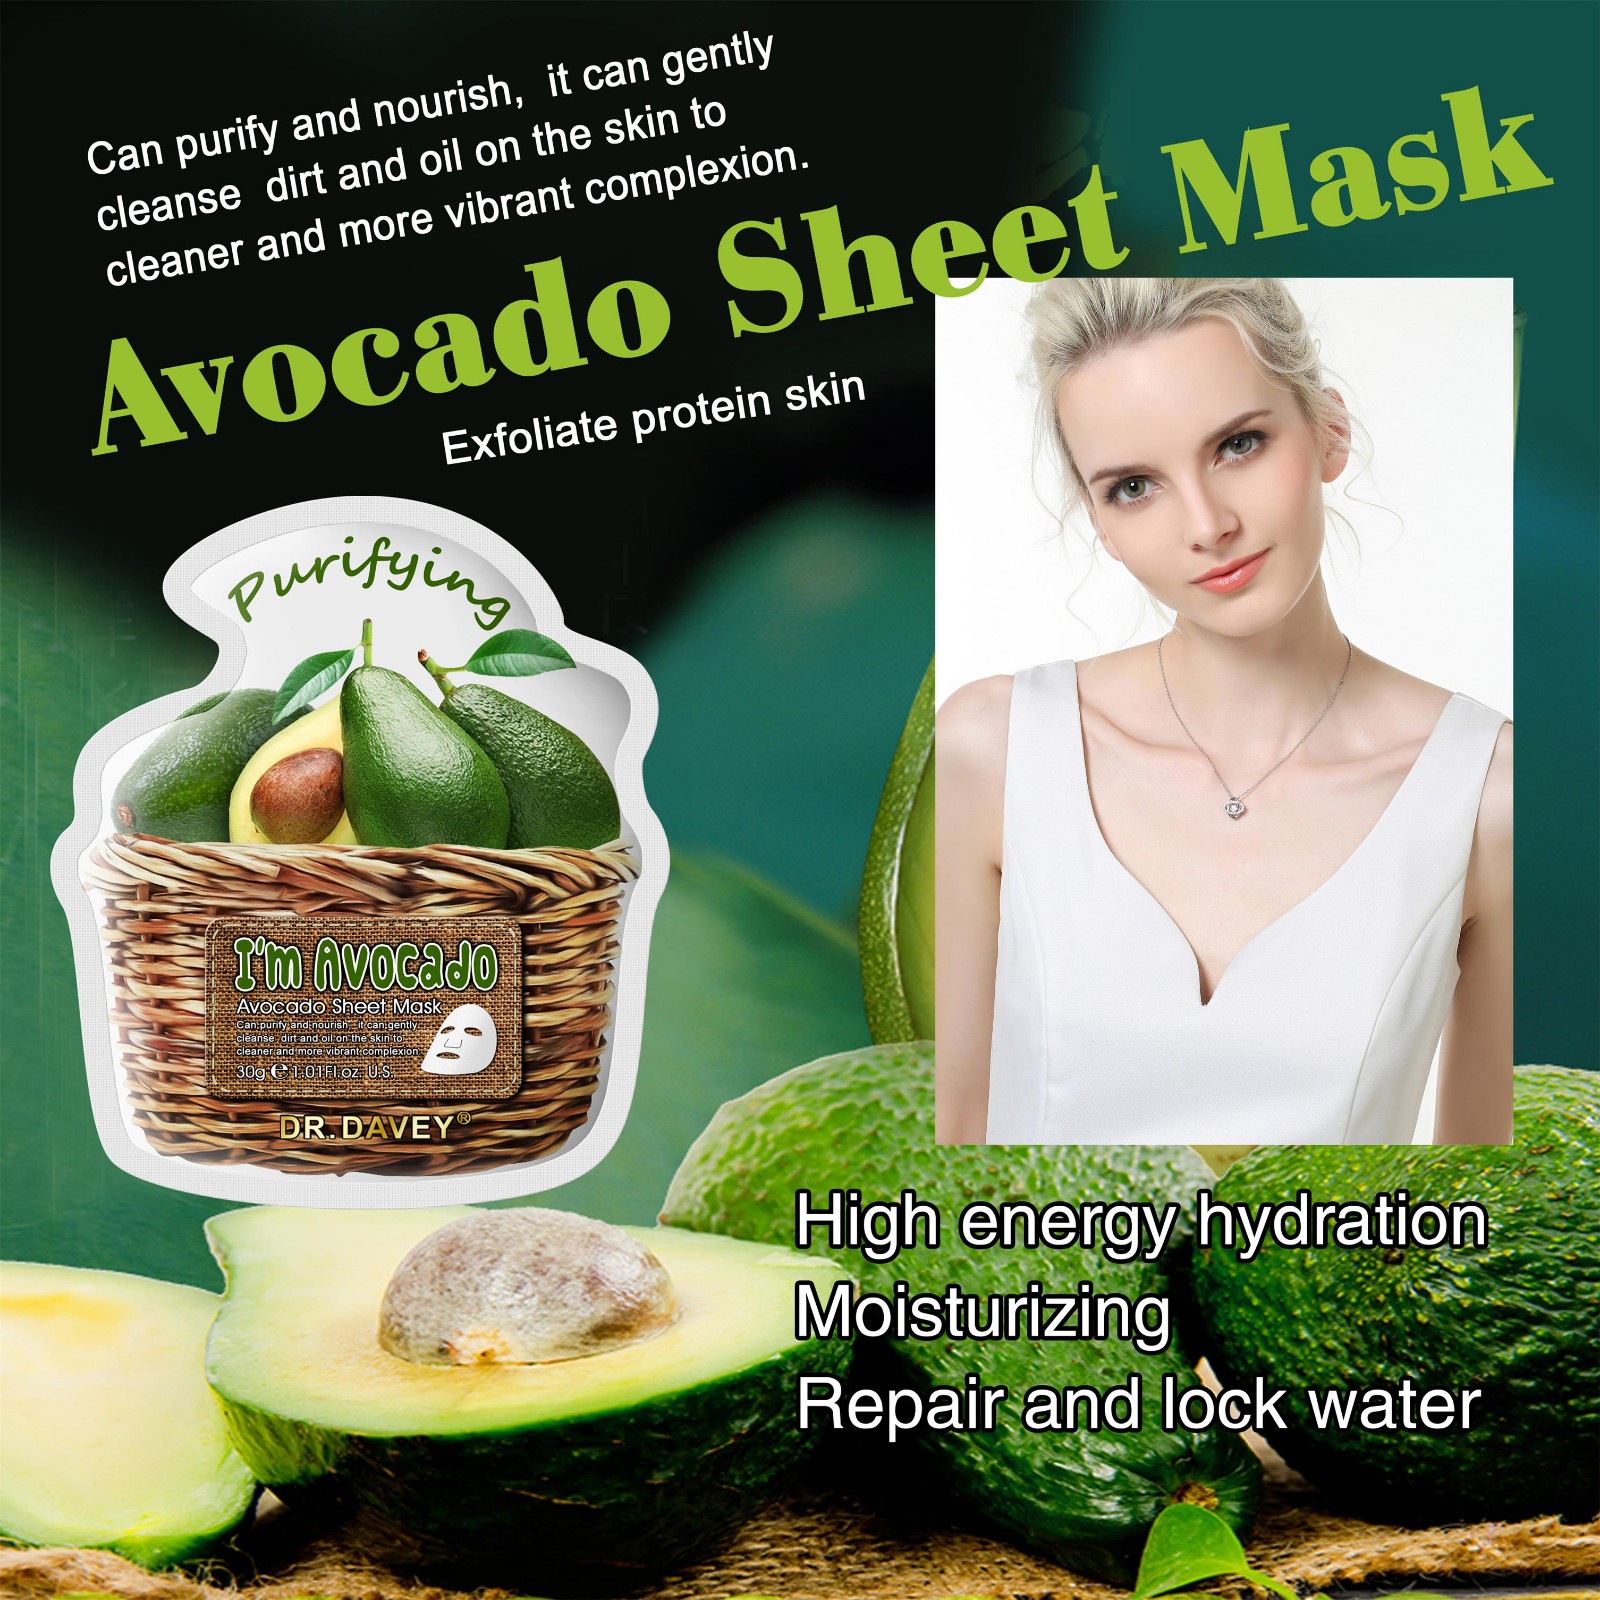 Avocado mask sheet